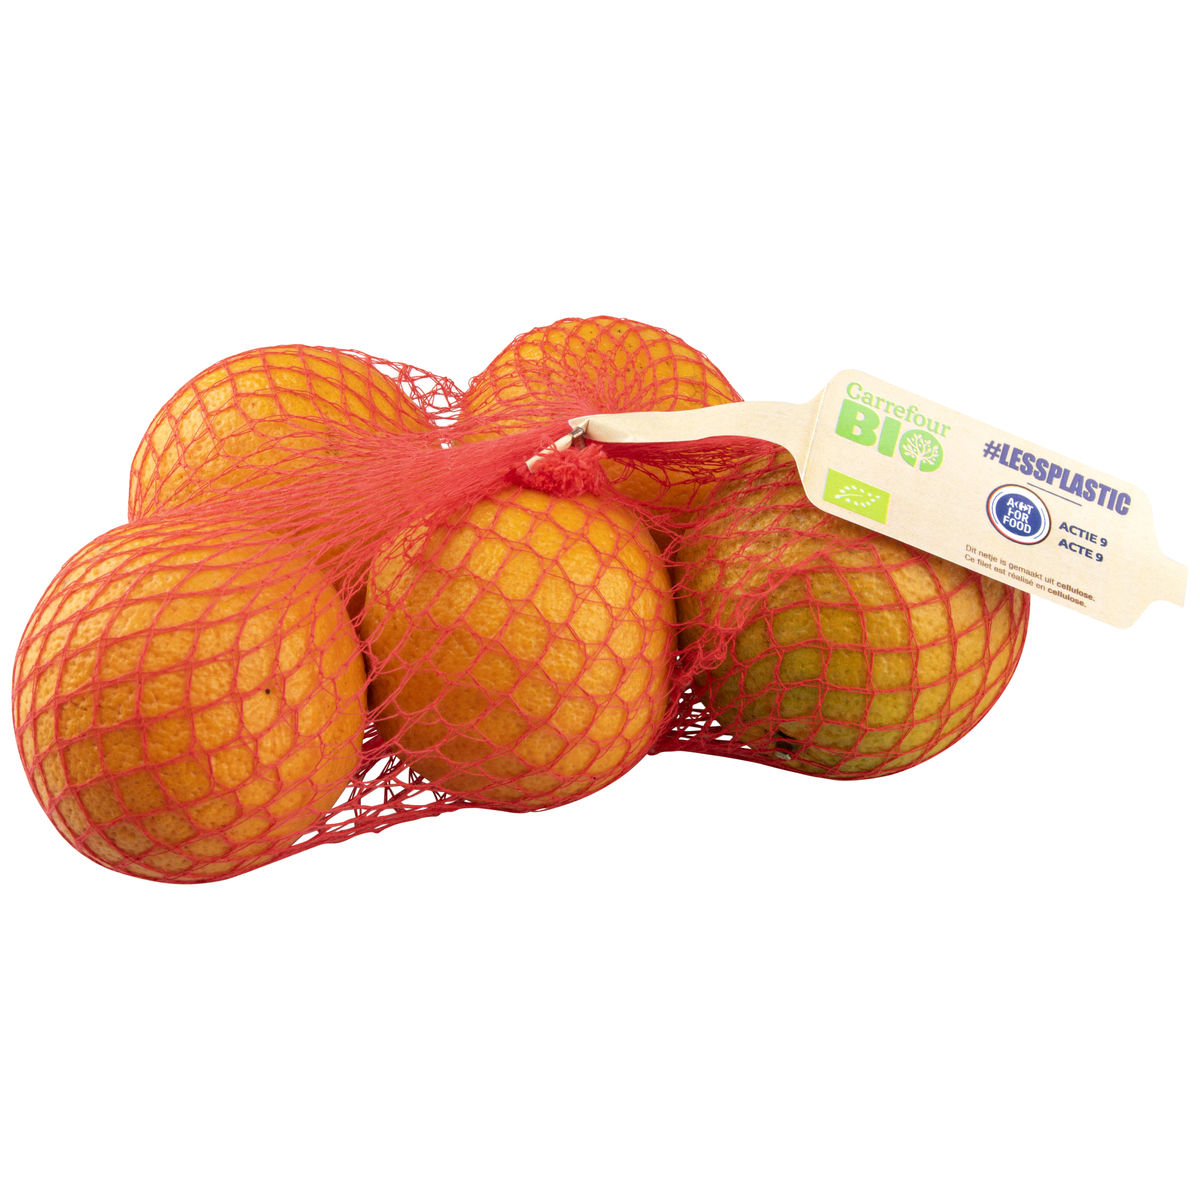 Carrefour BIO Oranges 1 kg